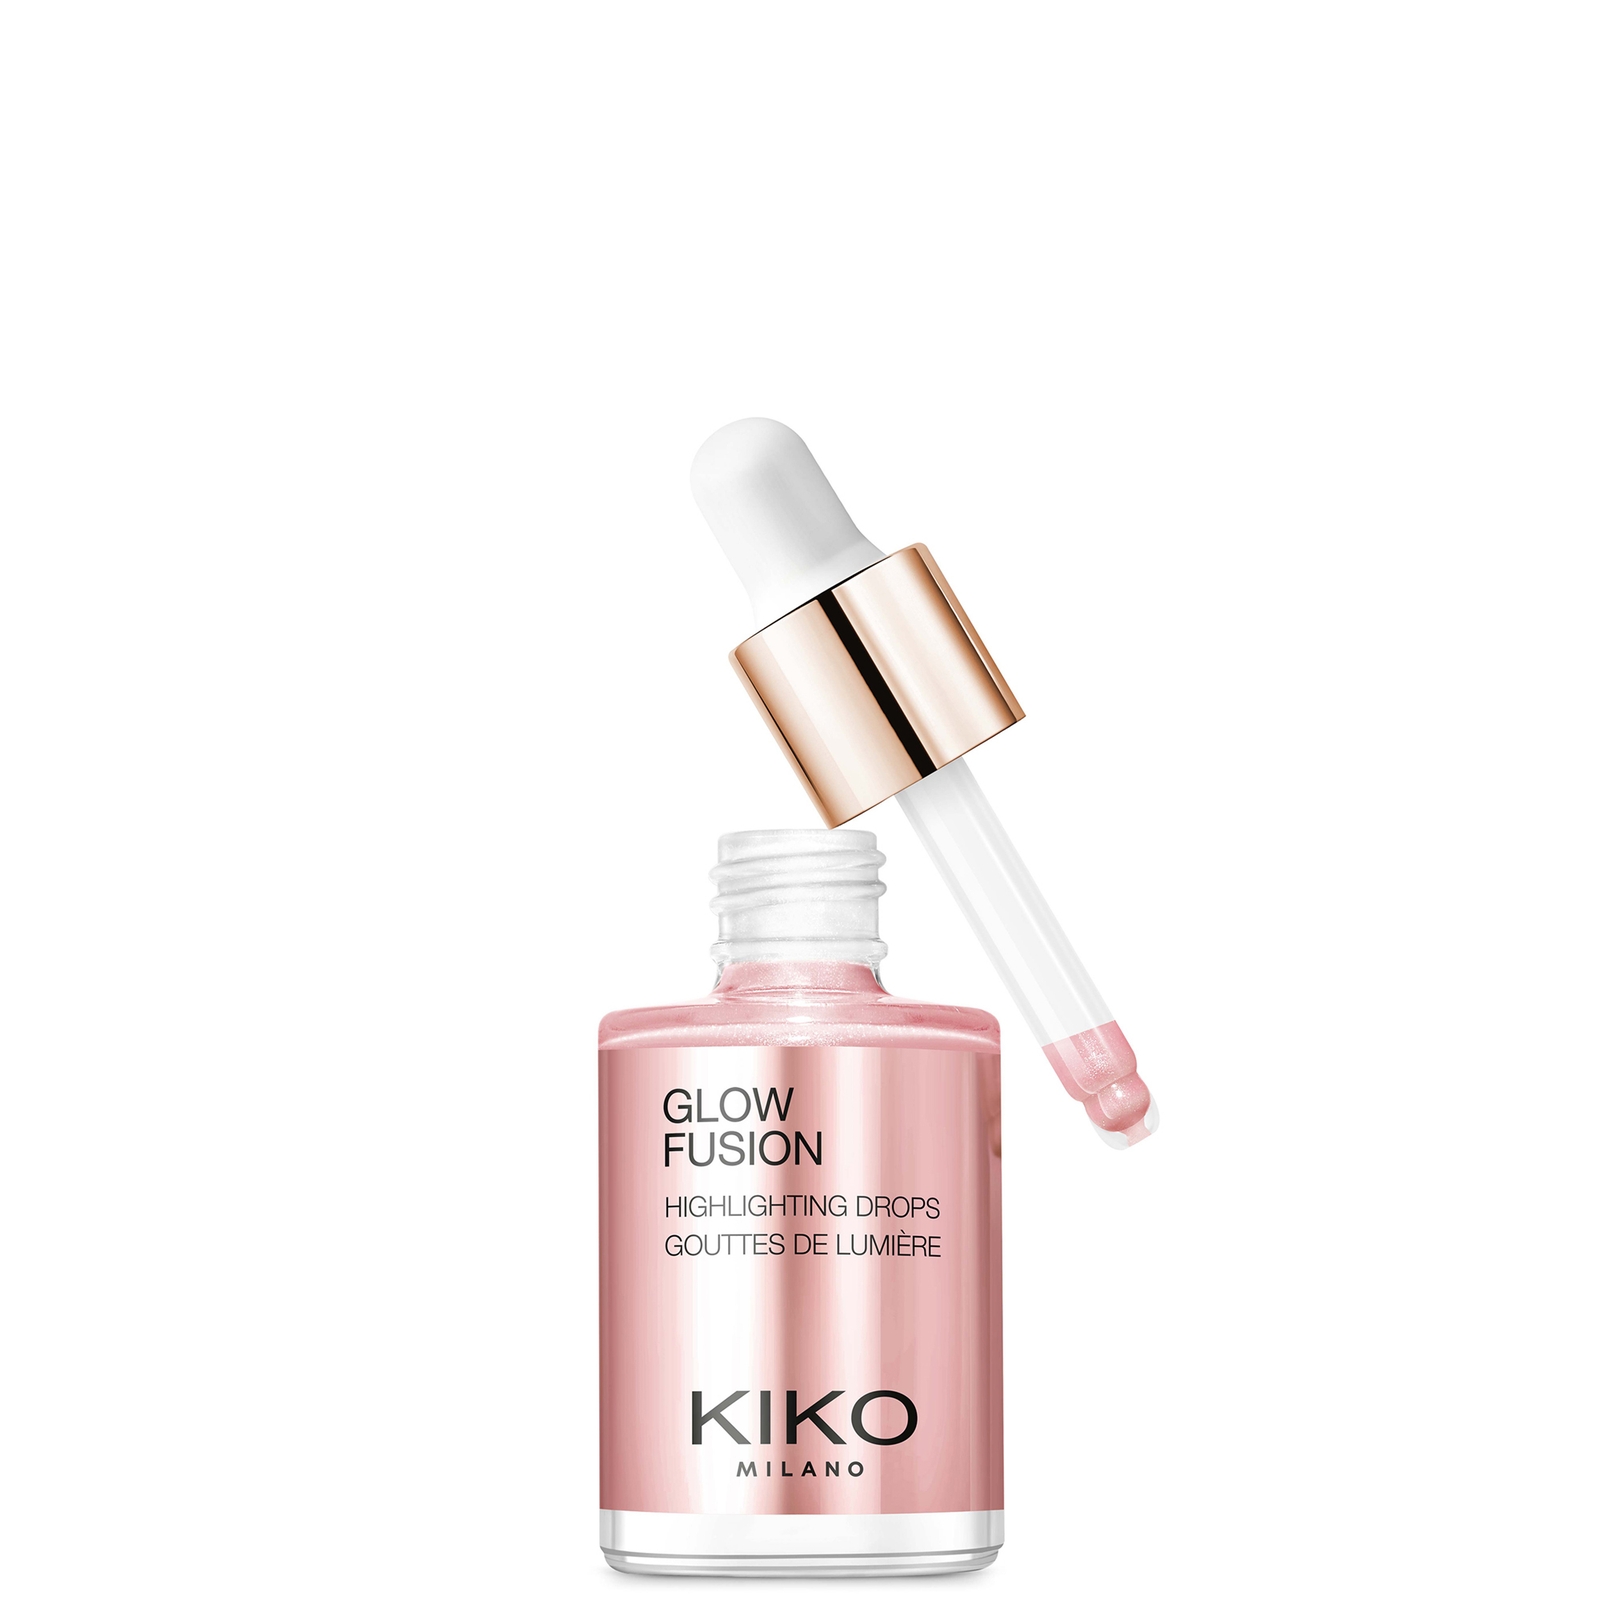 Image of KIKO Milano Glow Fusion Highlighting Drops 10ml (Various Shades) - 01 Platinum Rose